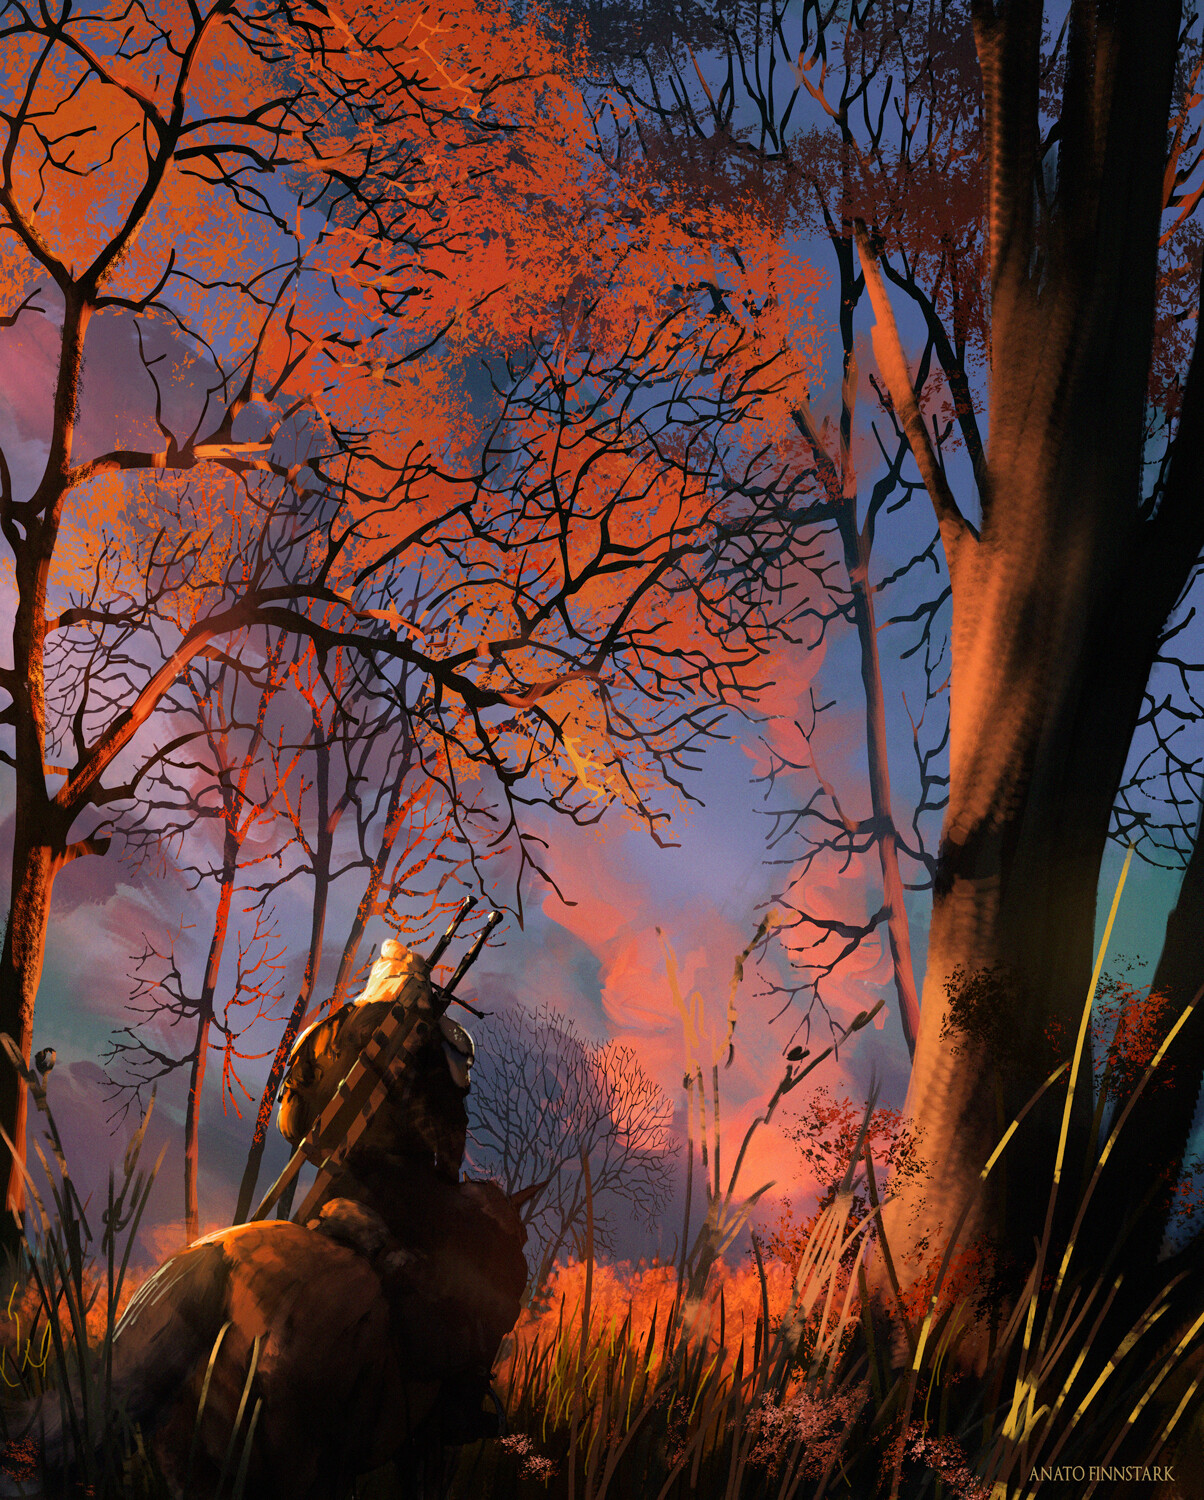 Fantasy Art Artwork Anato Finnstark The Witcher The Witcher 3 Wild Hunt 1204x1500